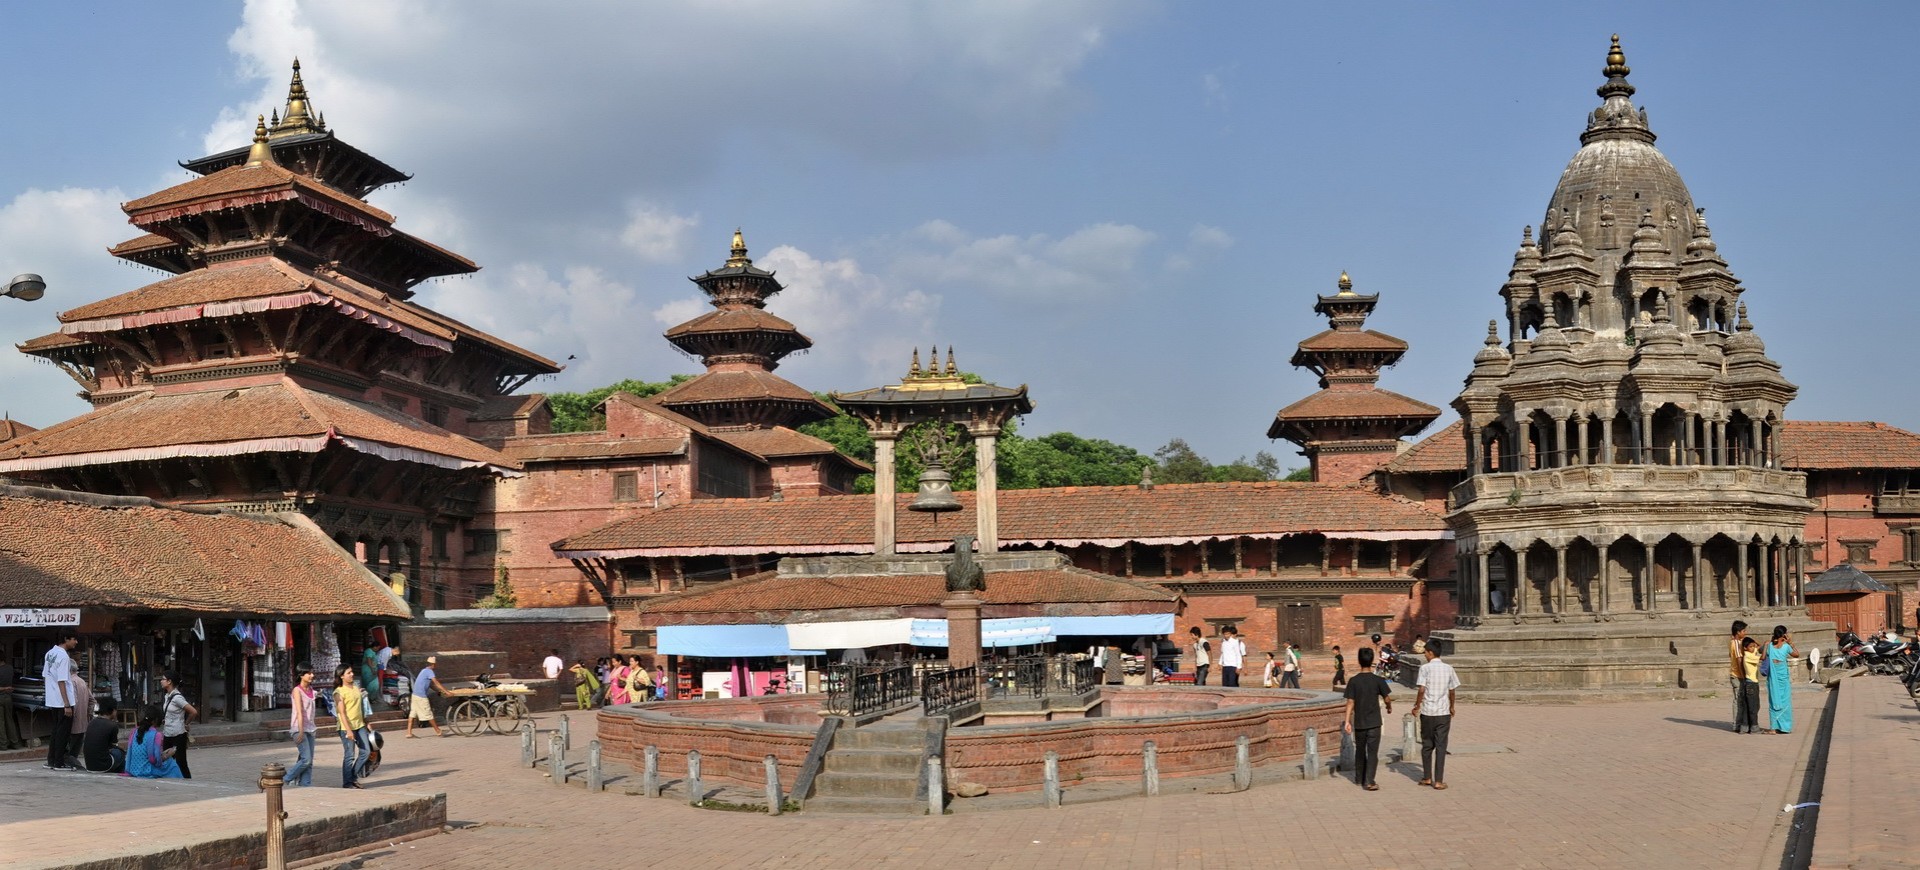 Dubar Square à Patan Kathmandou